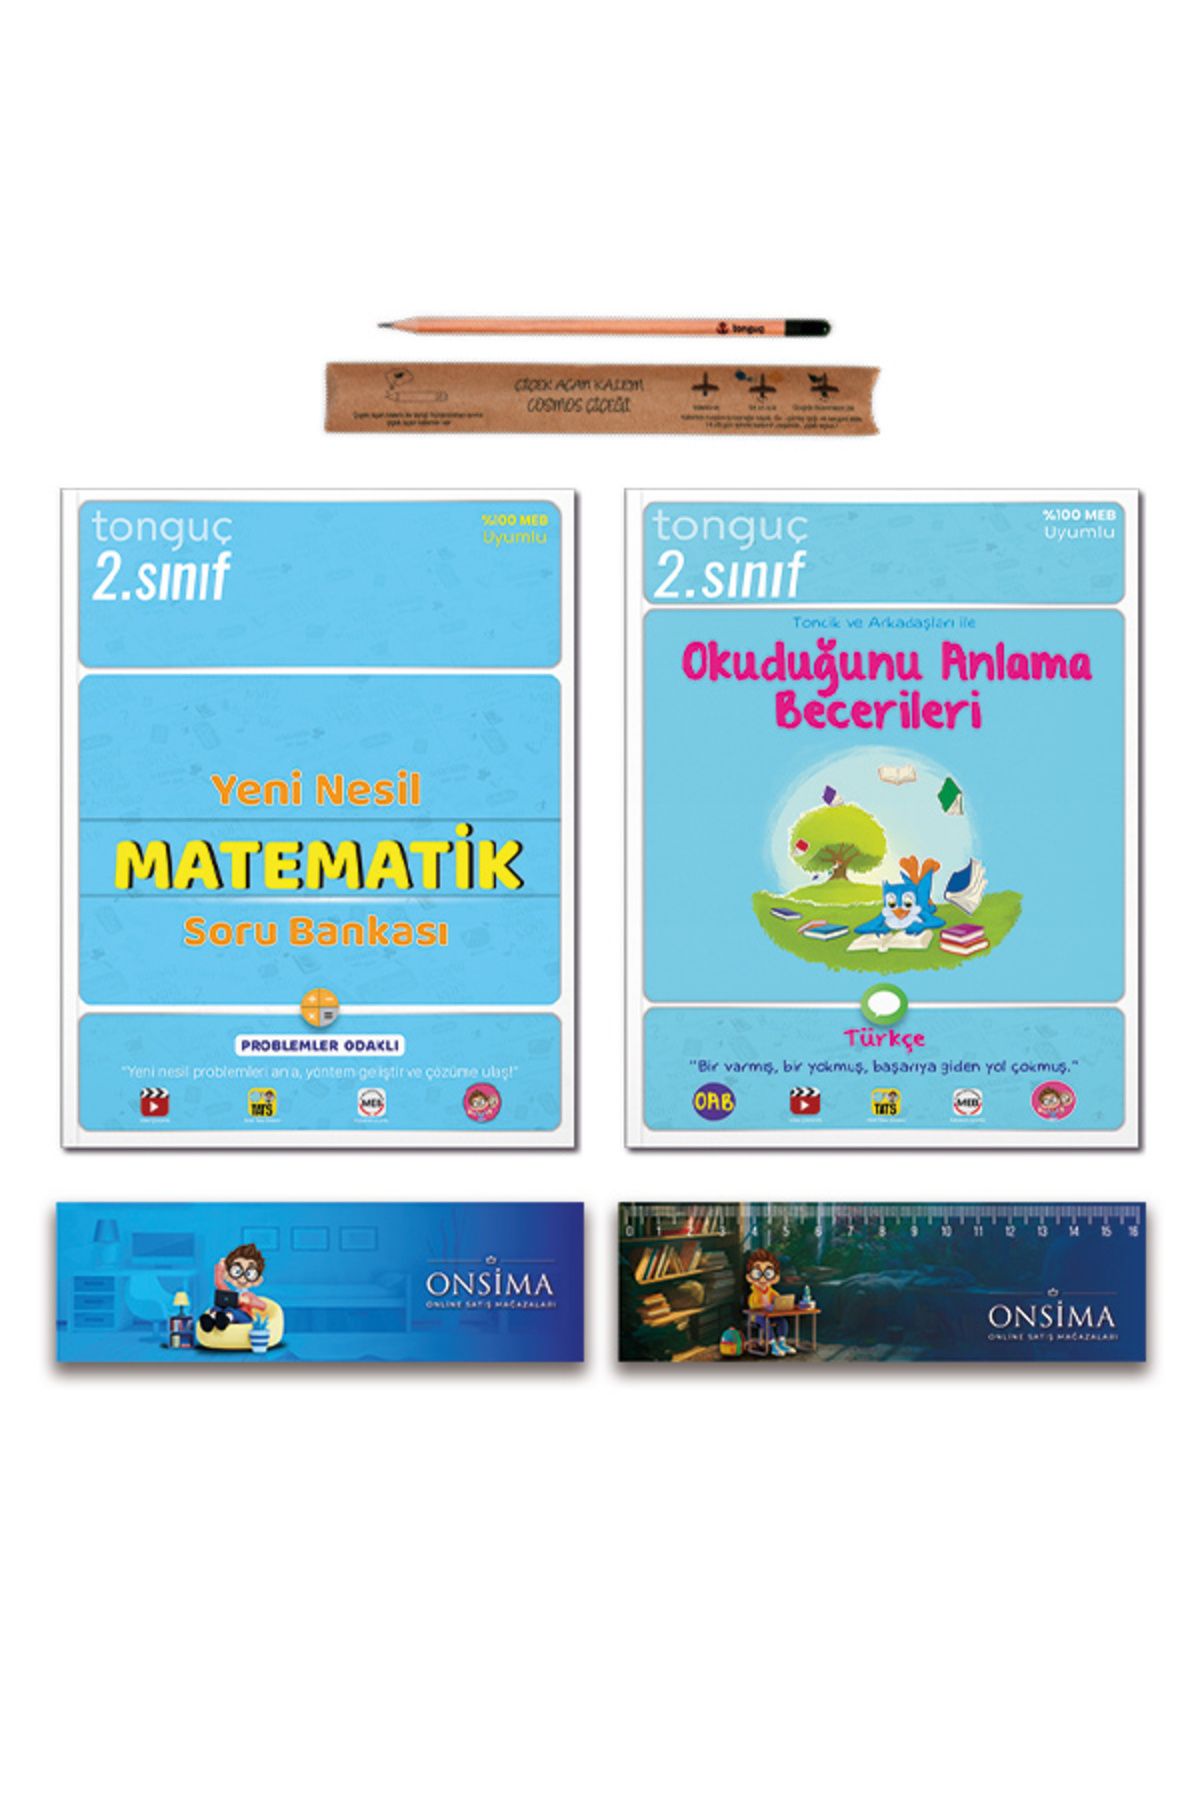 Tonguç Yayınları 2. Sınıf Yeni Nesil Matematik Soru Bankası - Türkçe Okuduğunu Anlama Becerileri Set 2 Kitap